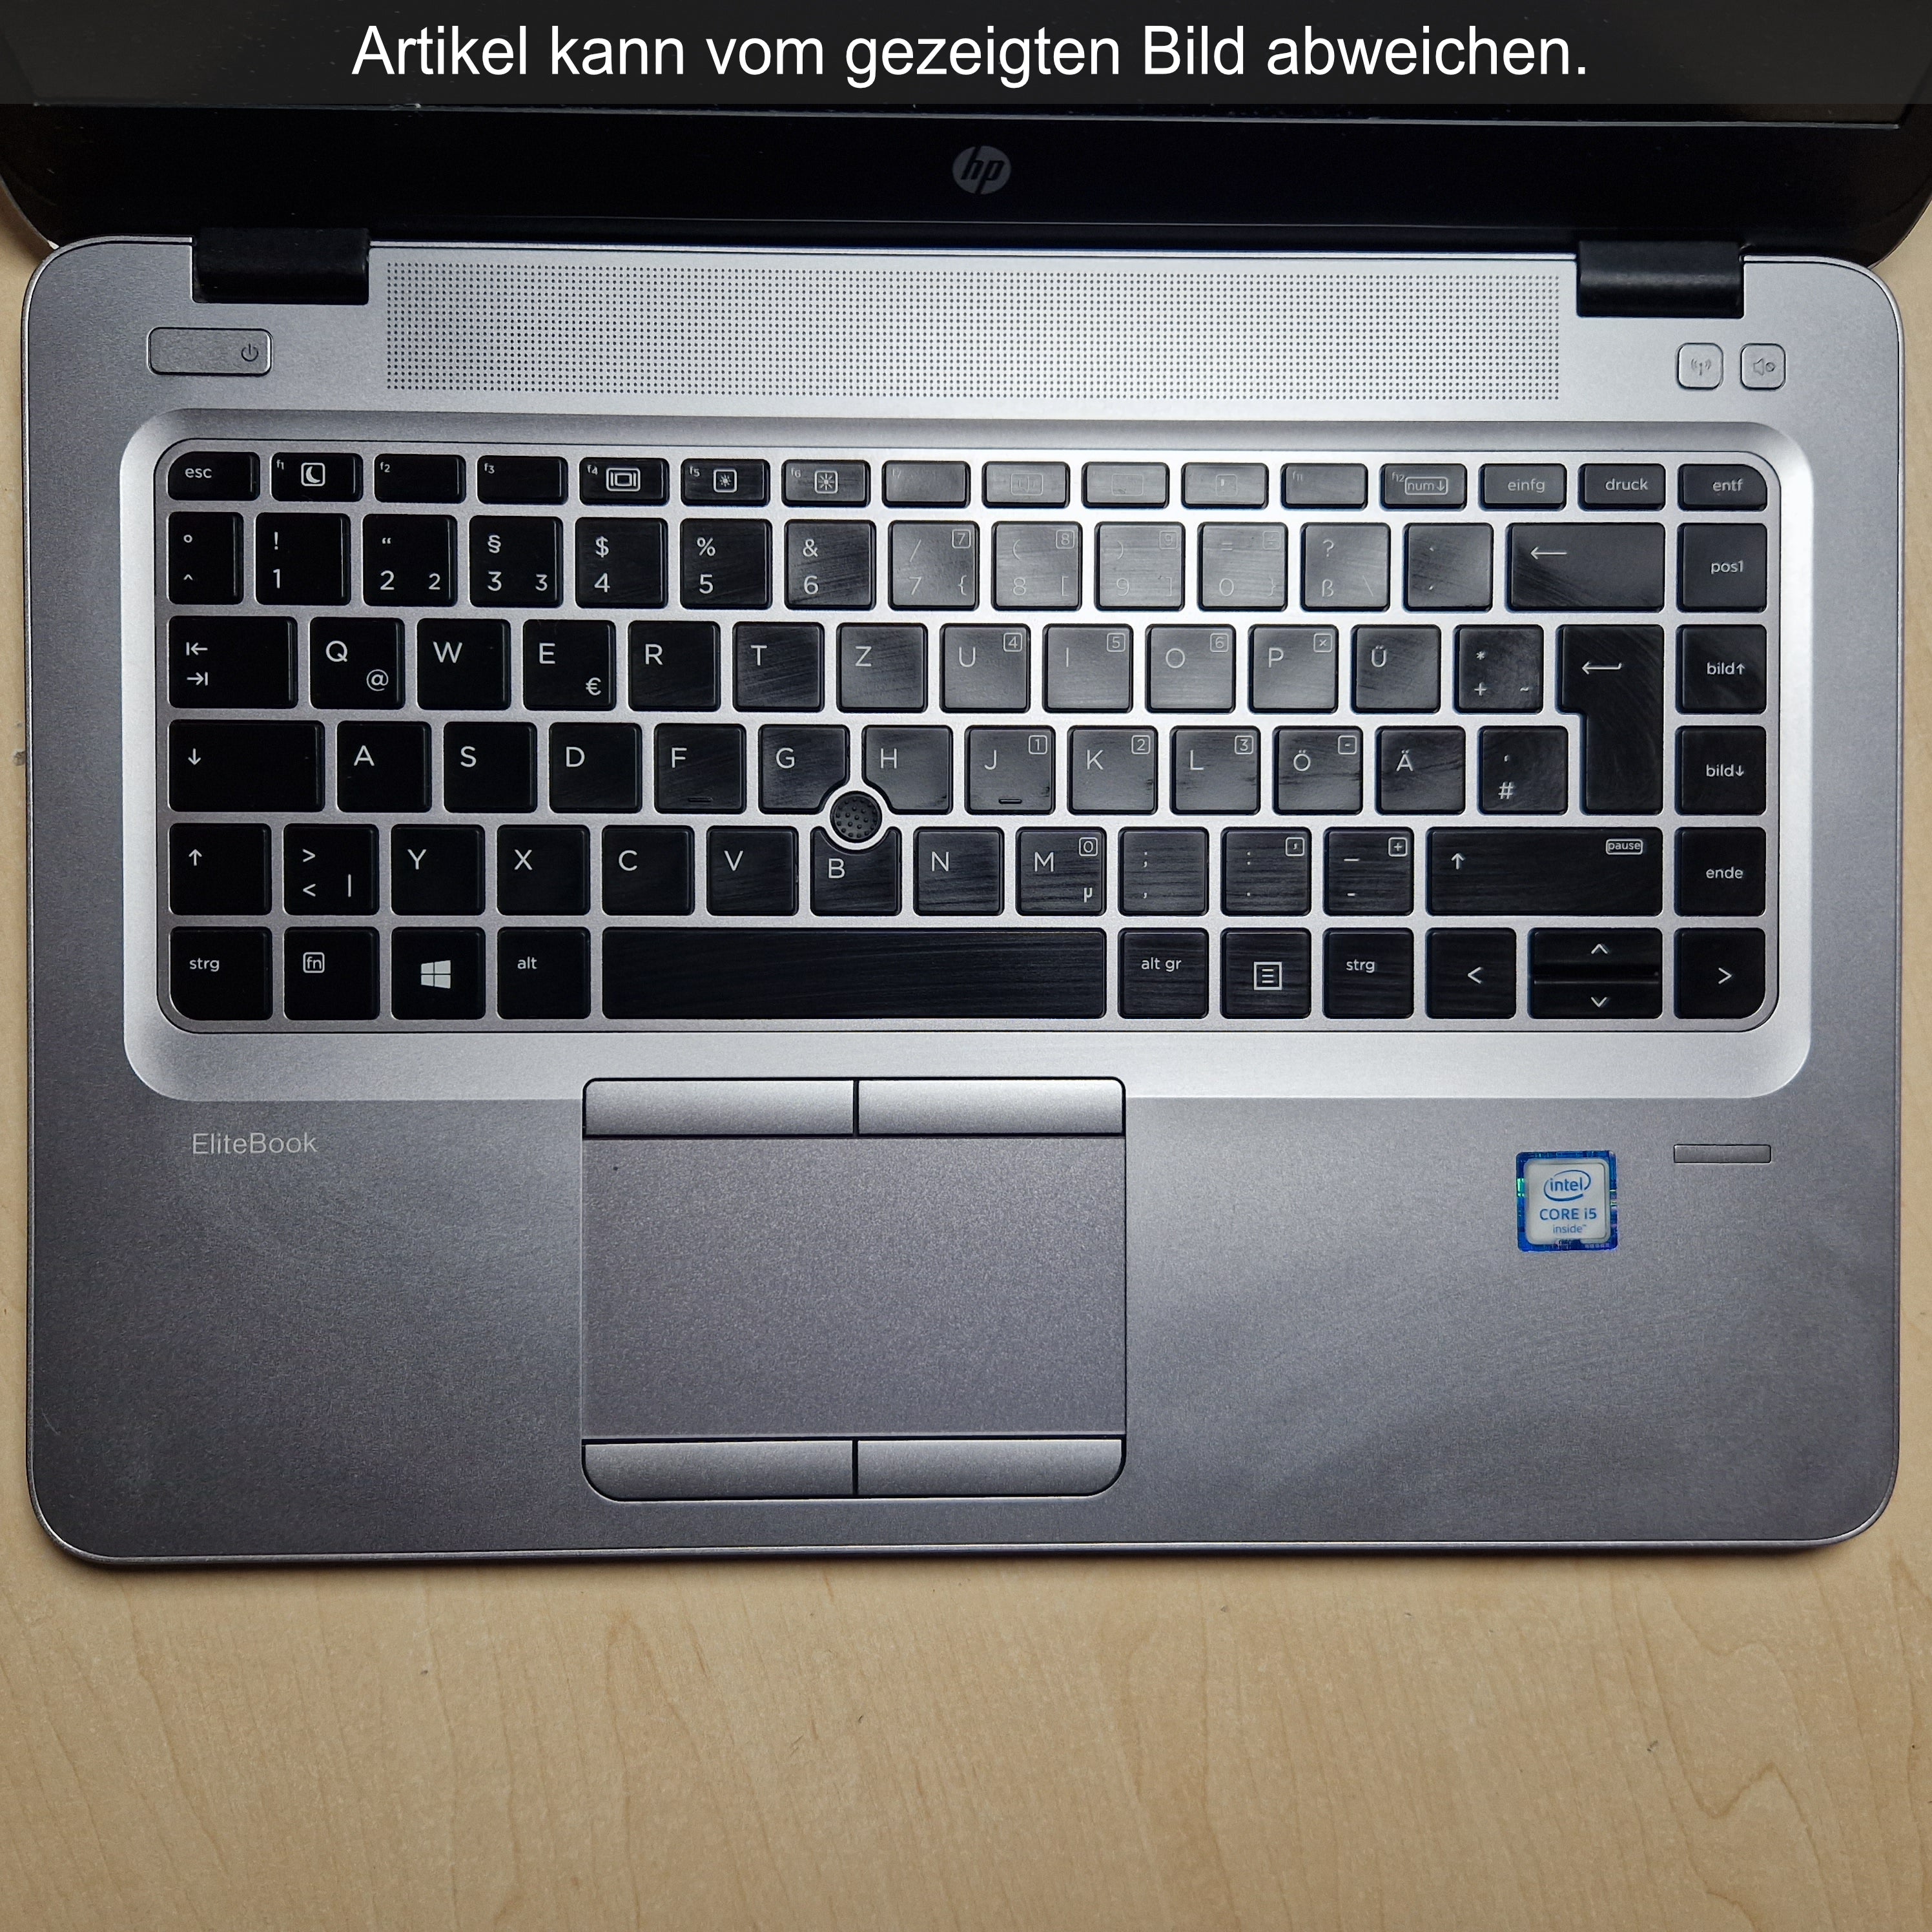 HP EliteBook 840 G3 (Silber, Zustand: C)